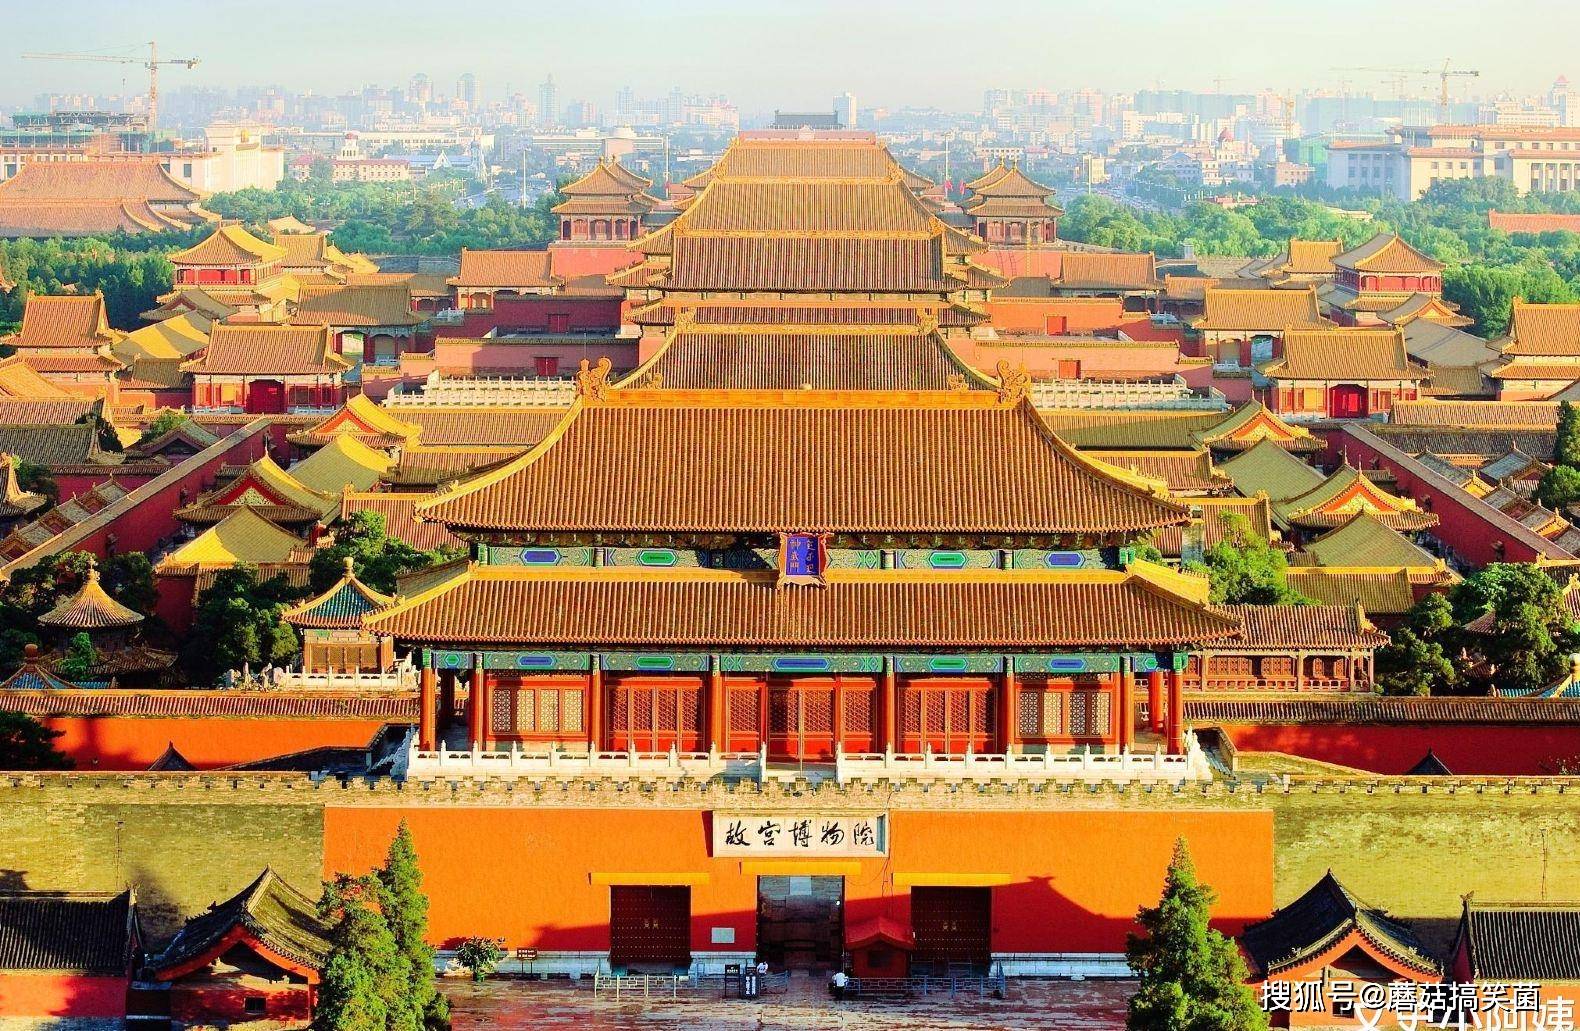 原创中国6大古建筑,从各个方面,让你感受华夏建筑的魅力!